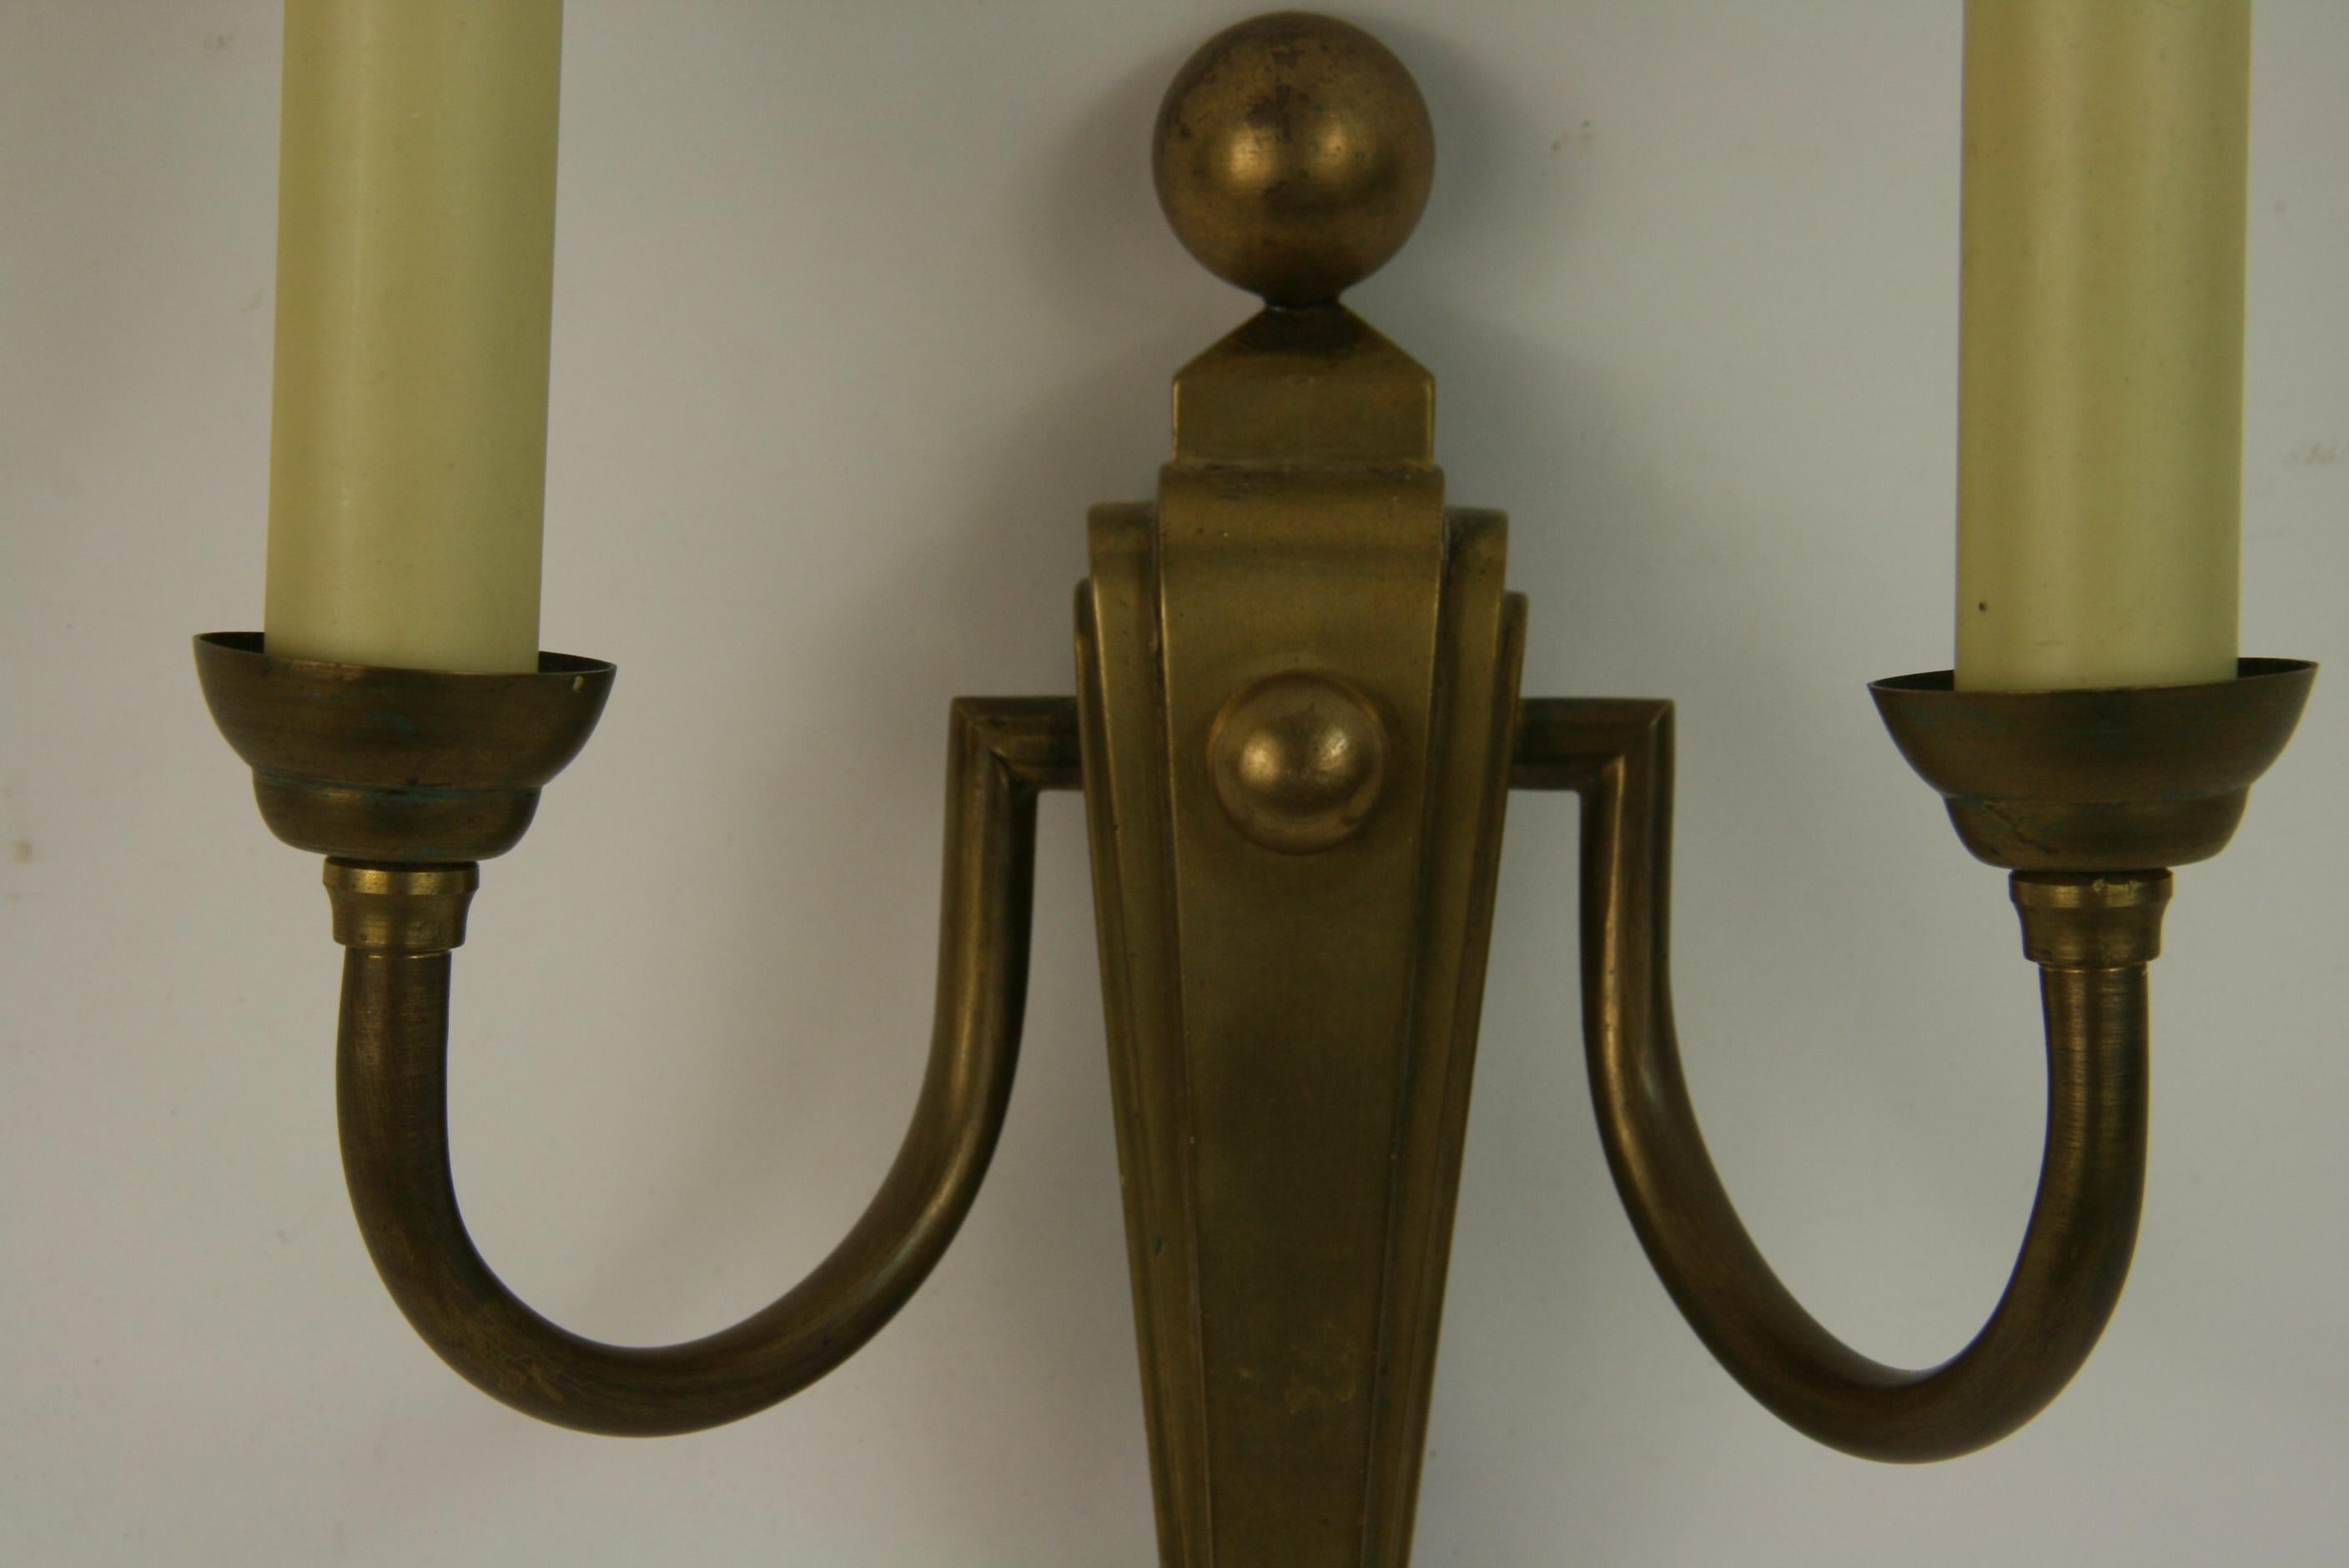 3-178 Paar französische Art-Déco-Wandleuchter mit 2 Lampen
Nehmen Sie 2 Kandelaberglühbirnen, die für US umverdrahtet sind.